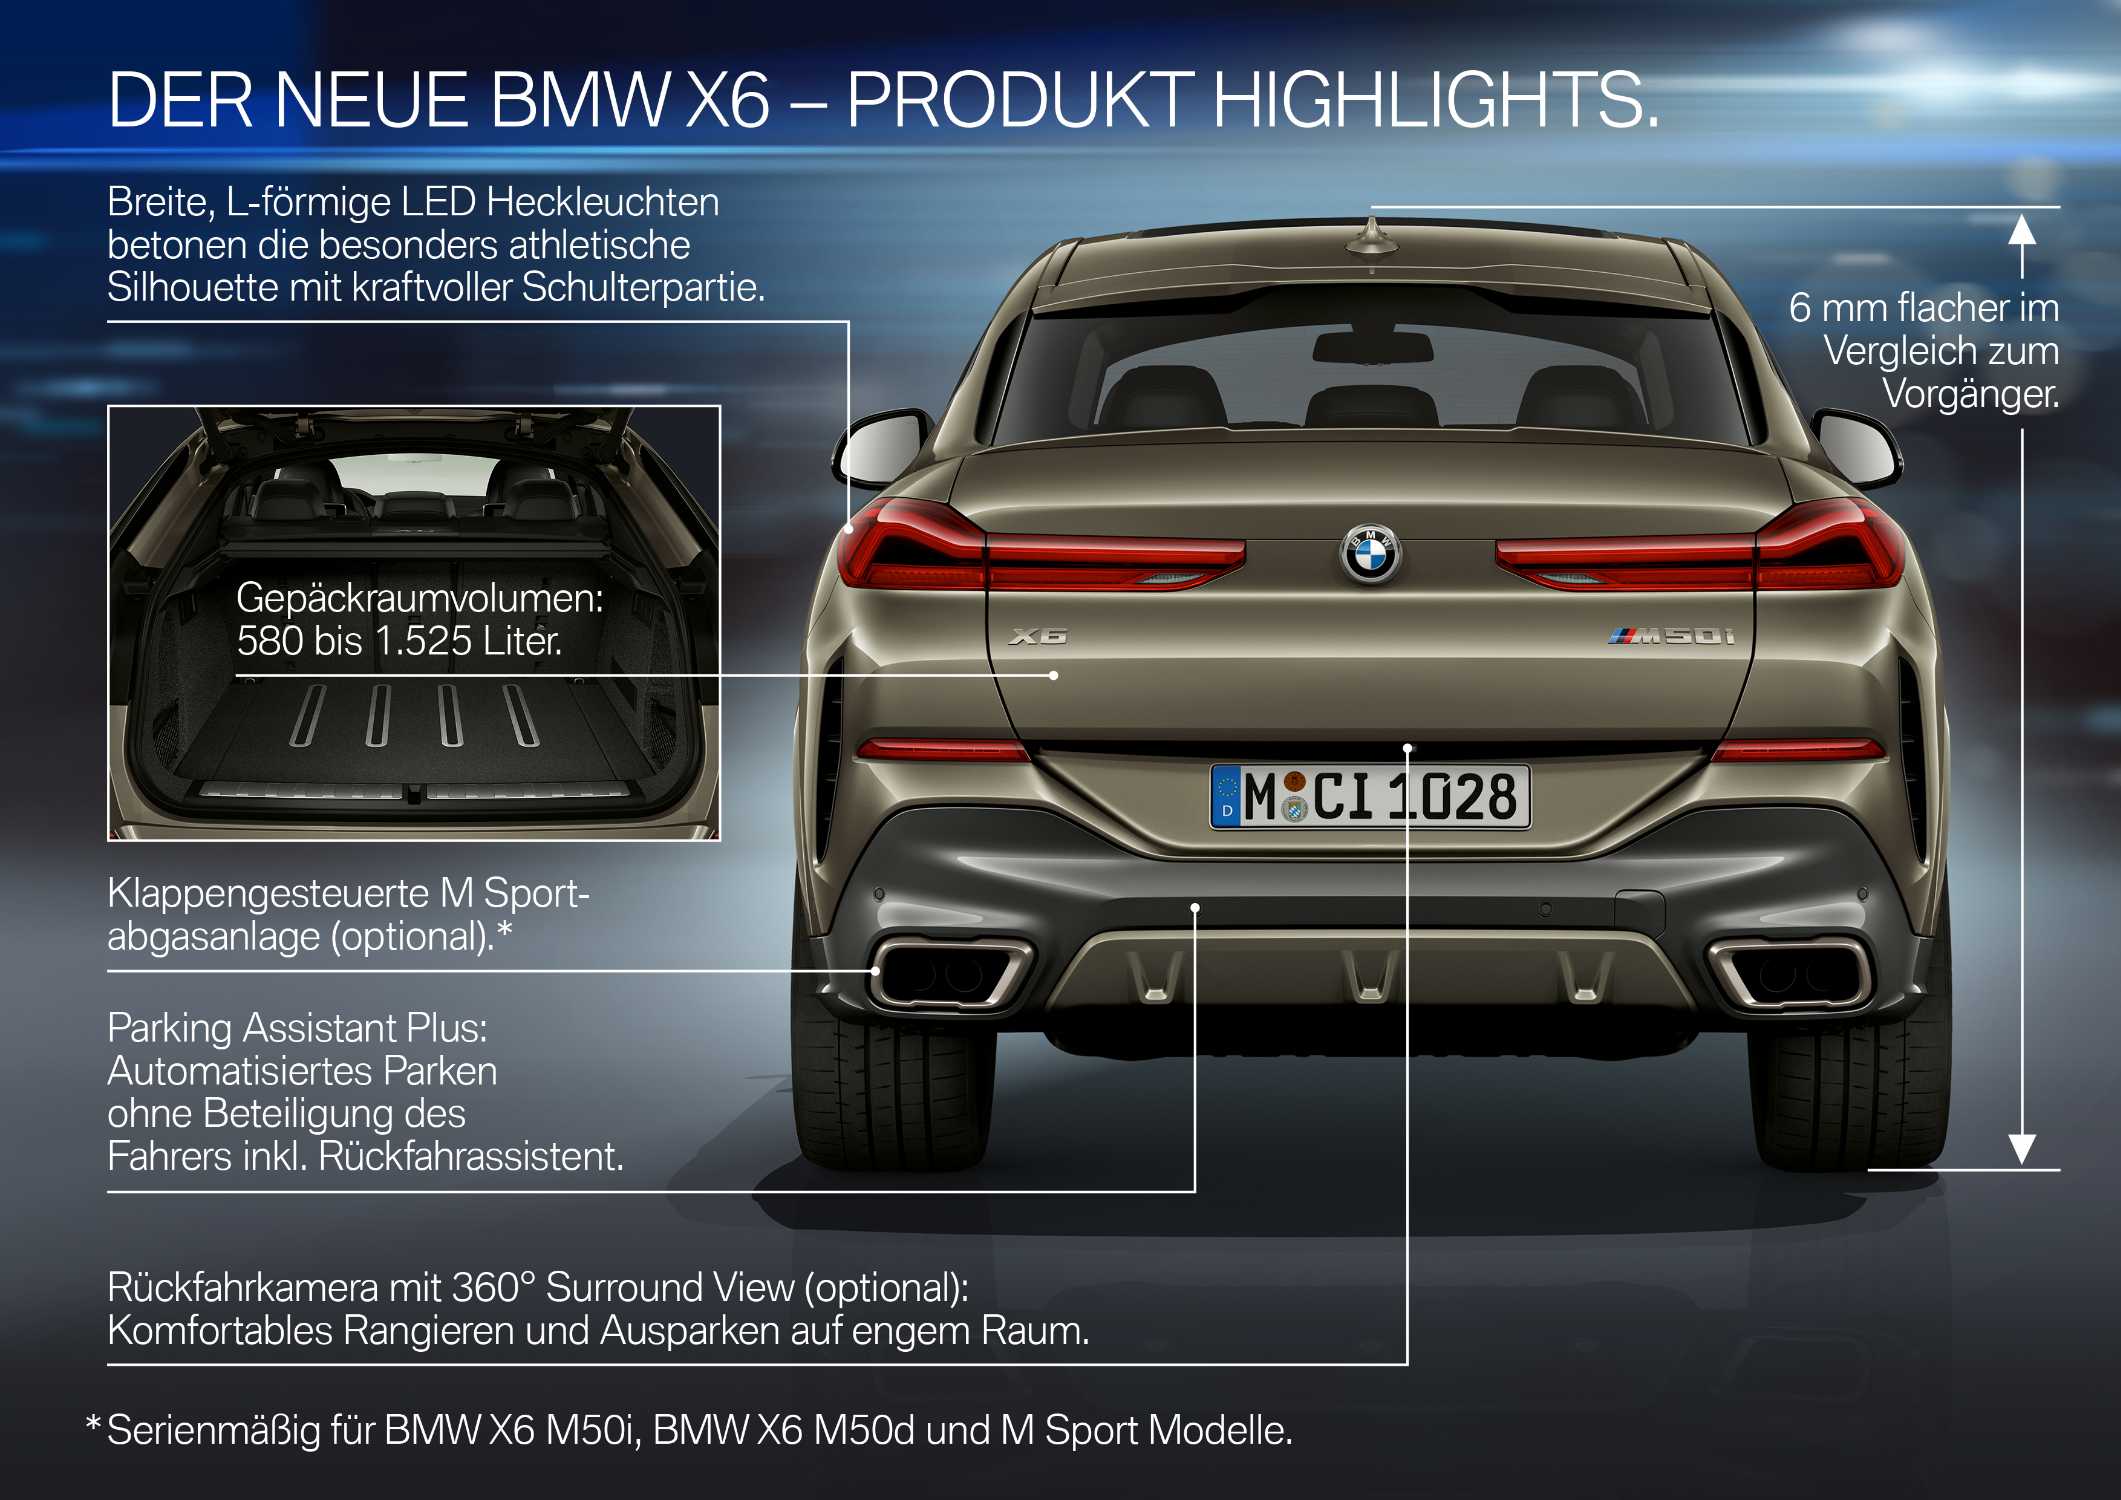 Der neue BMW X6 – Highlights (07/2019).